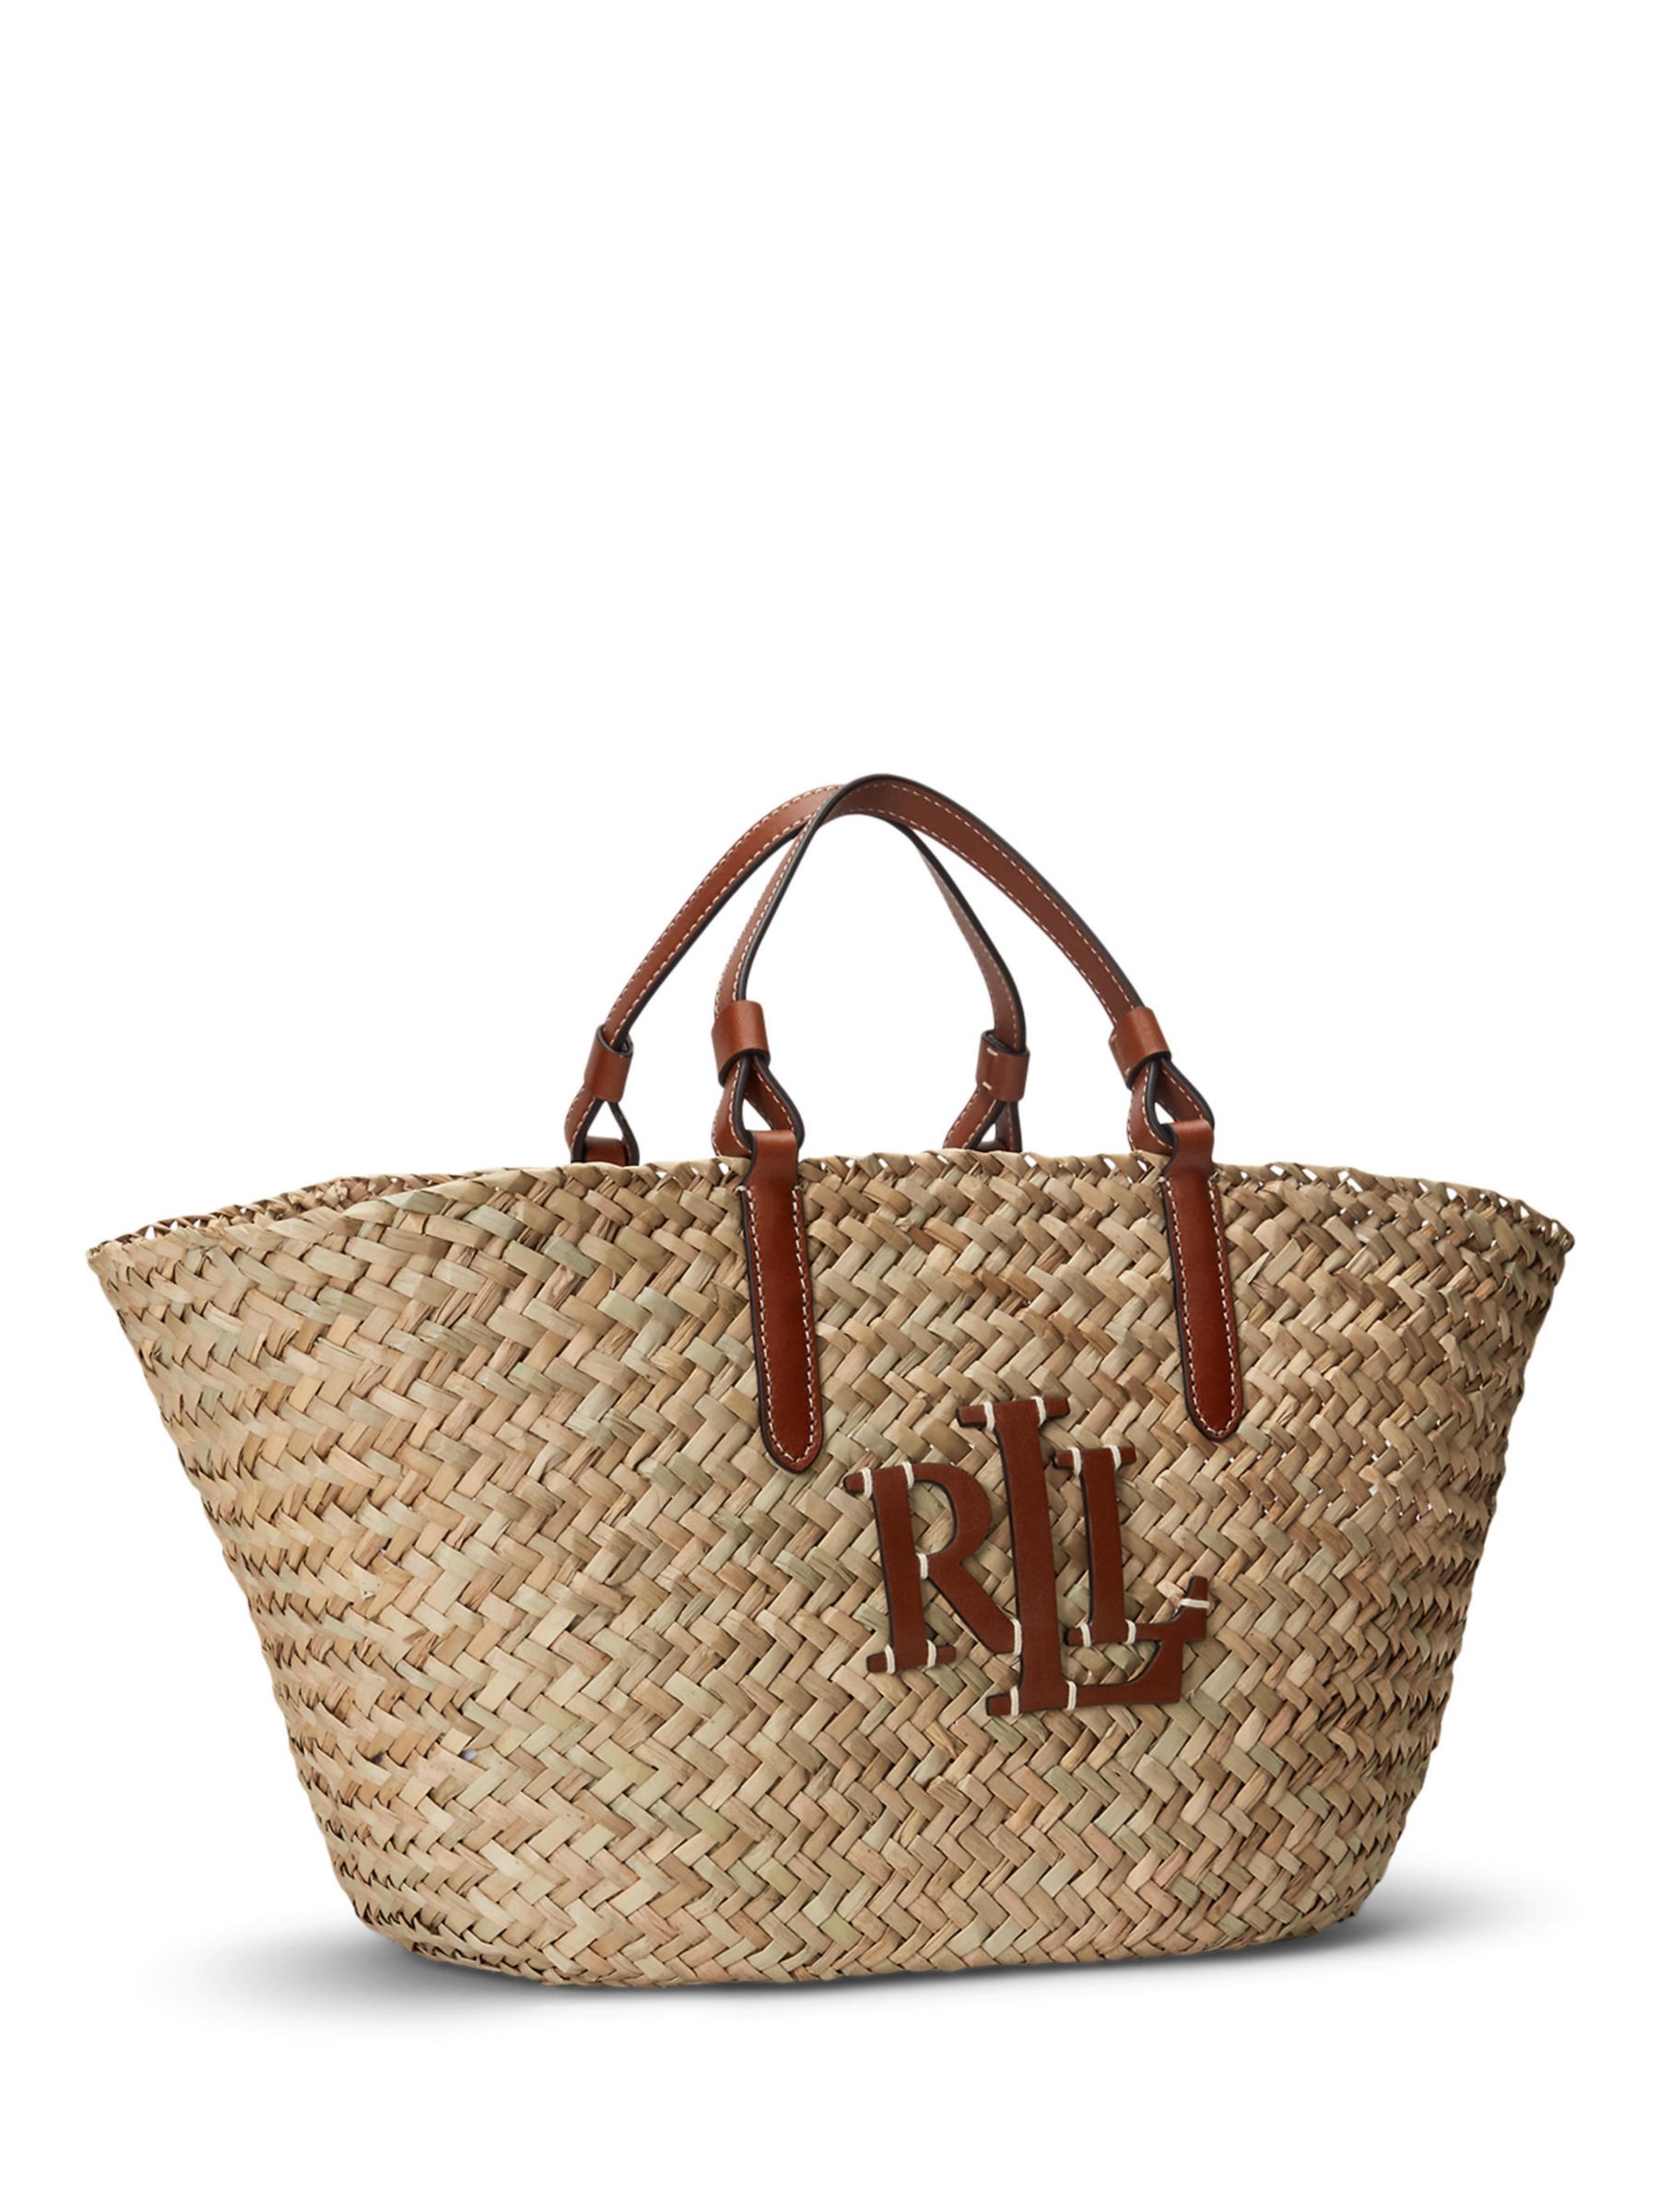 Buy Lauren Ralph Lauren Shelbie Straw Tote Bag, Natural/Lauren Tan Online at johnlewis.com